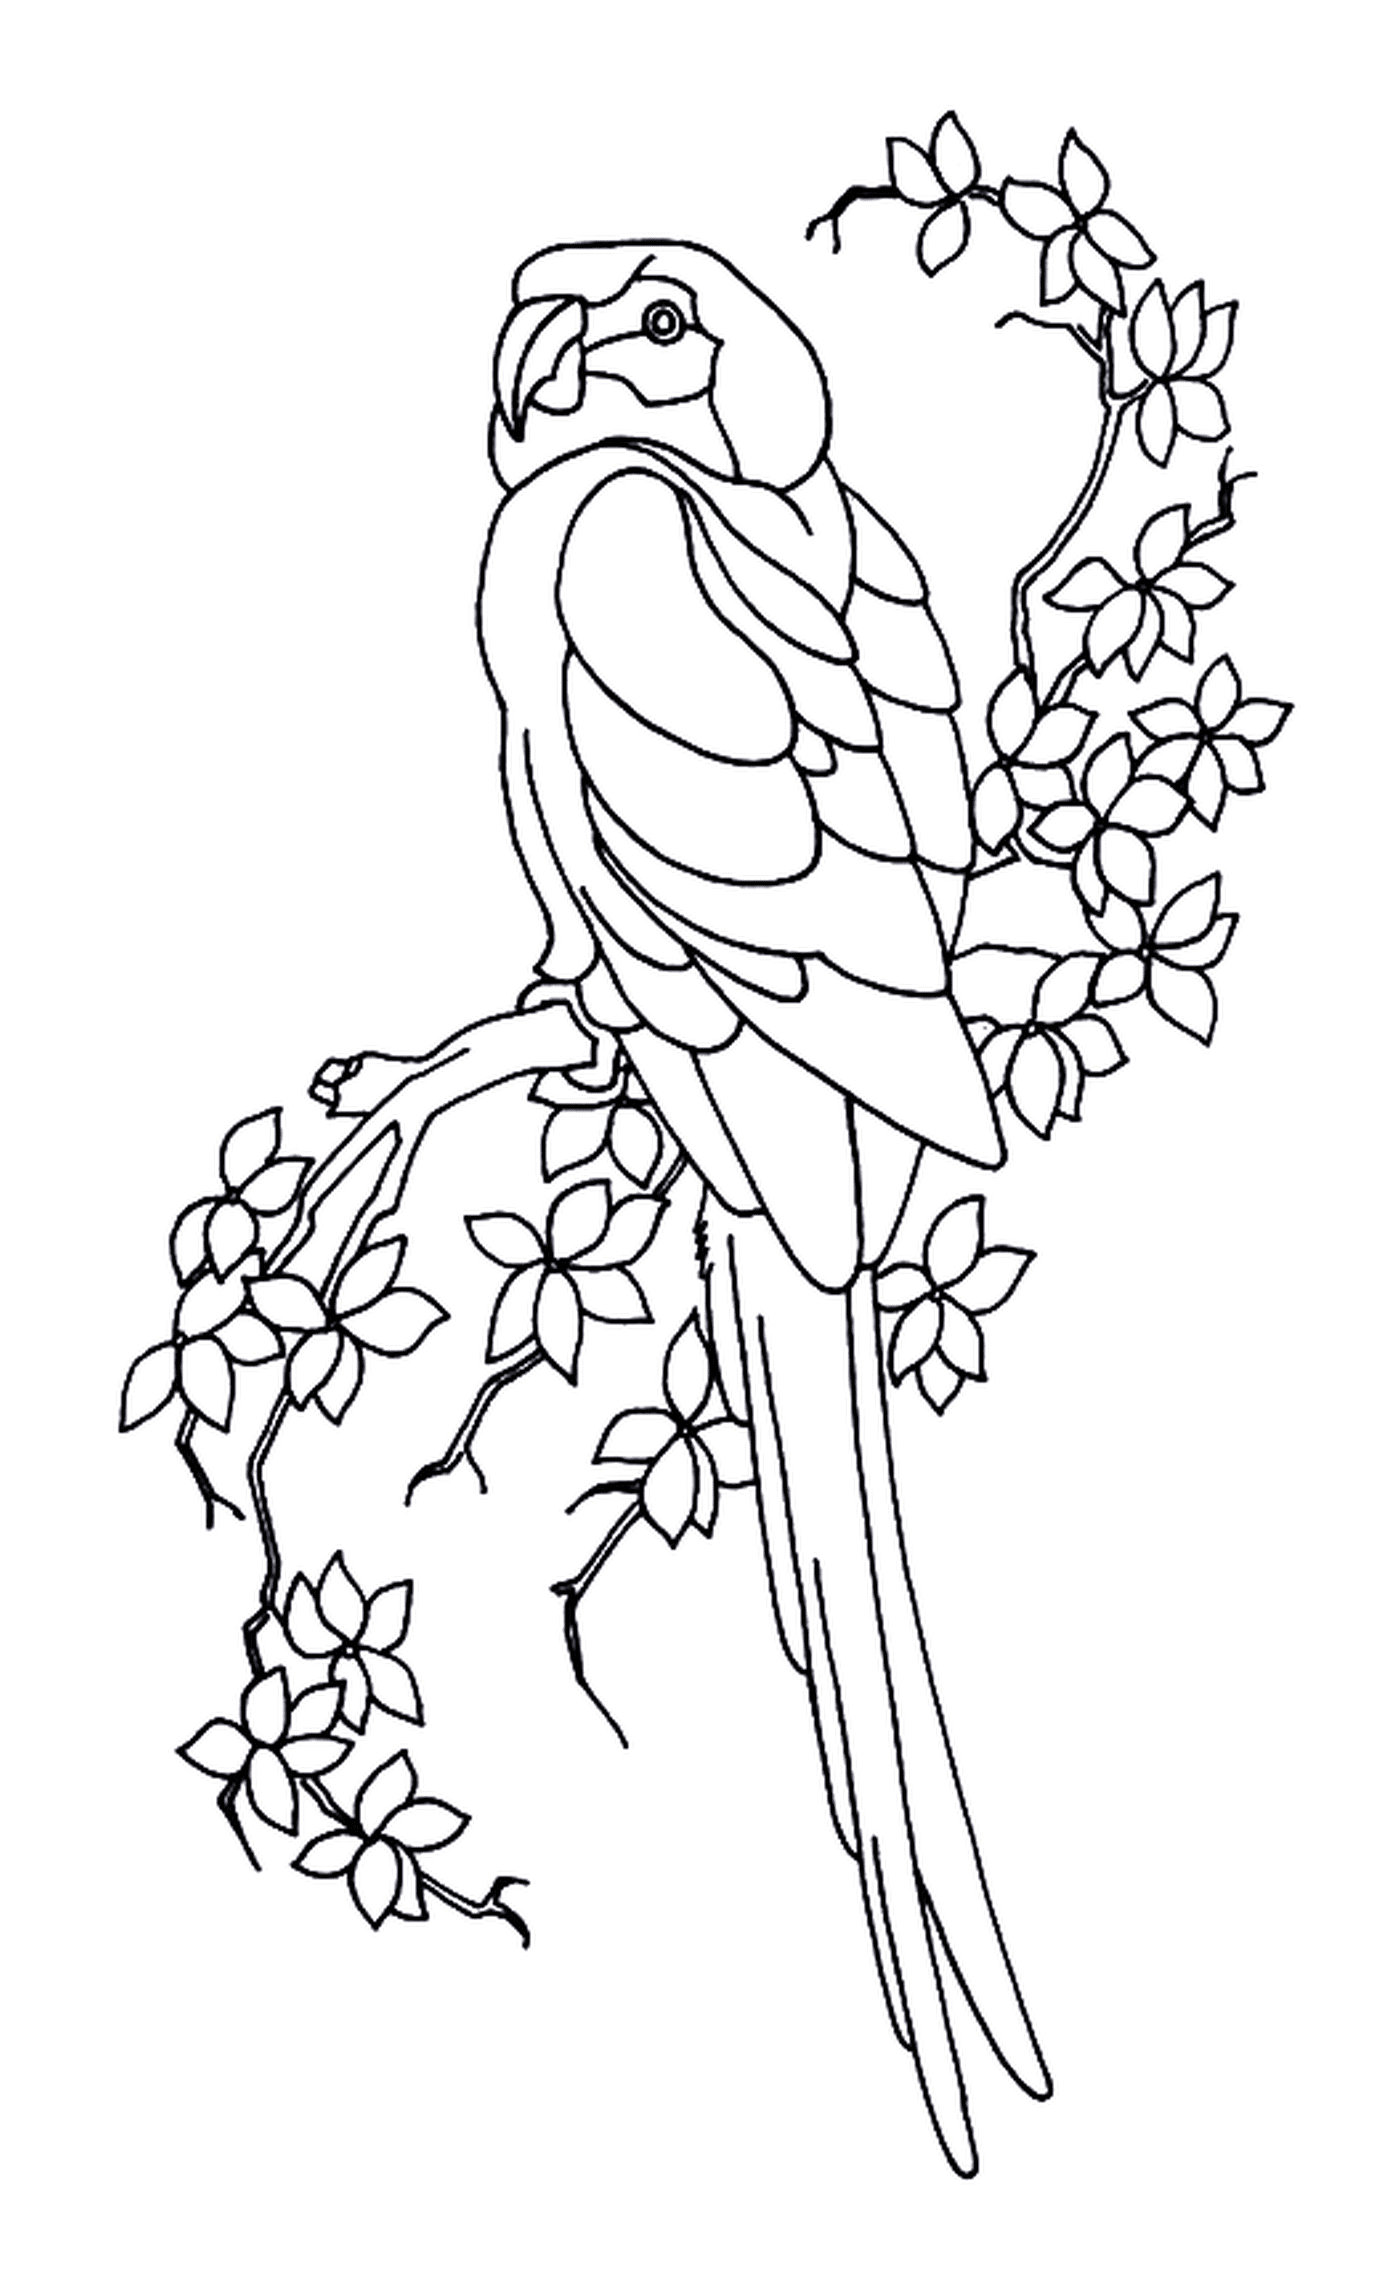  Perrote y hojas, pájaro posado en una rama de árbol 